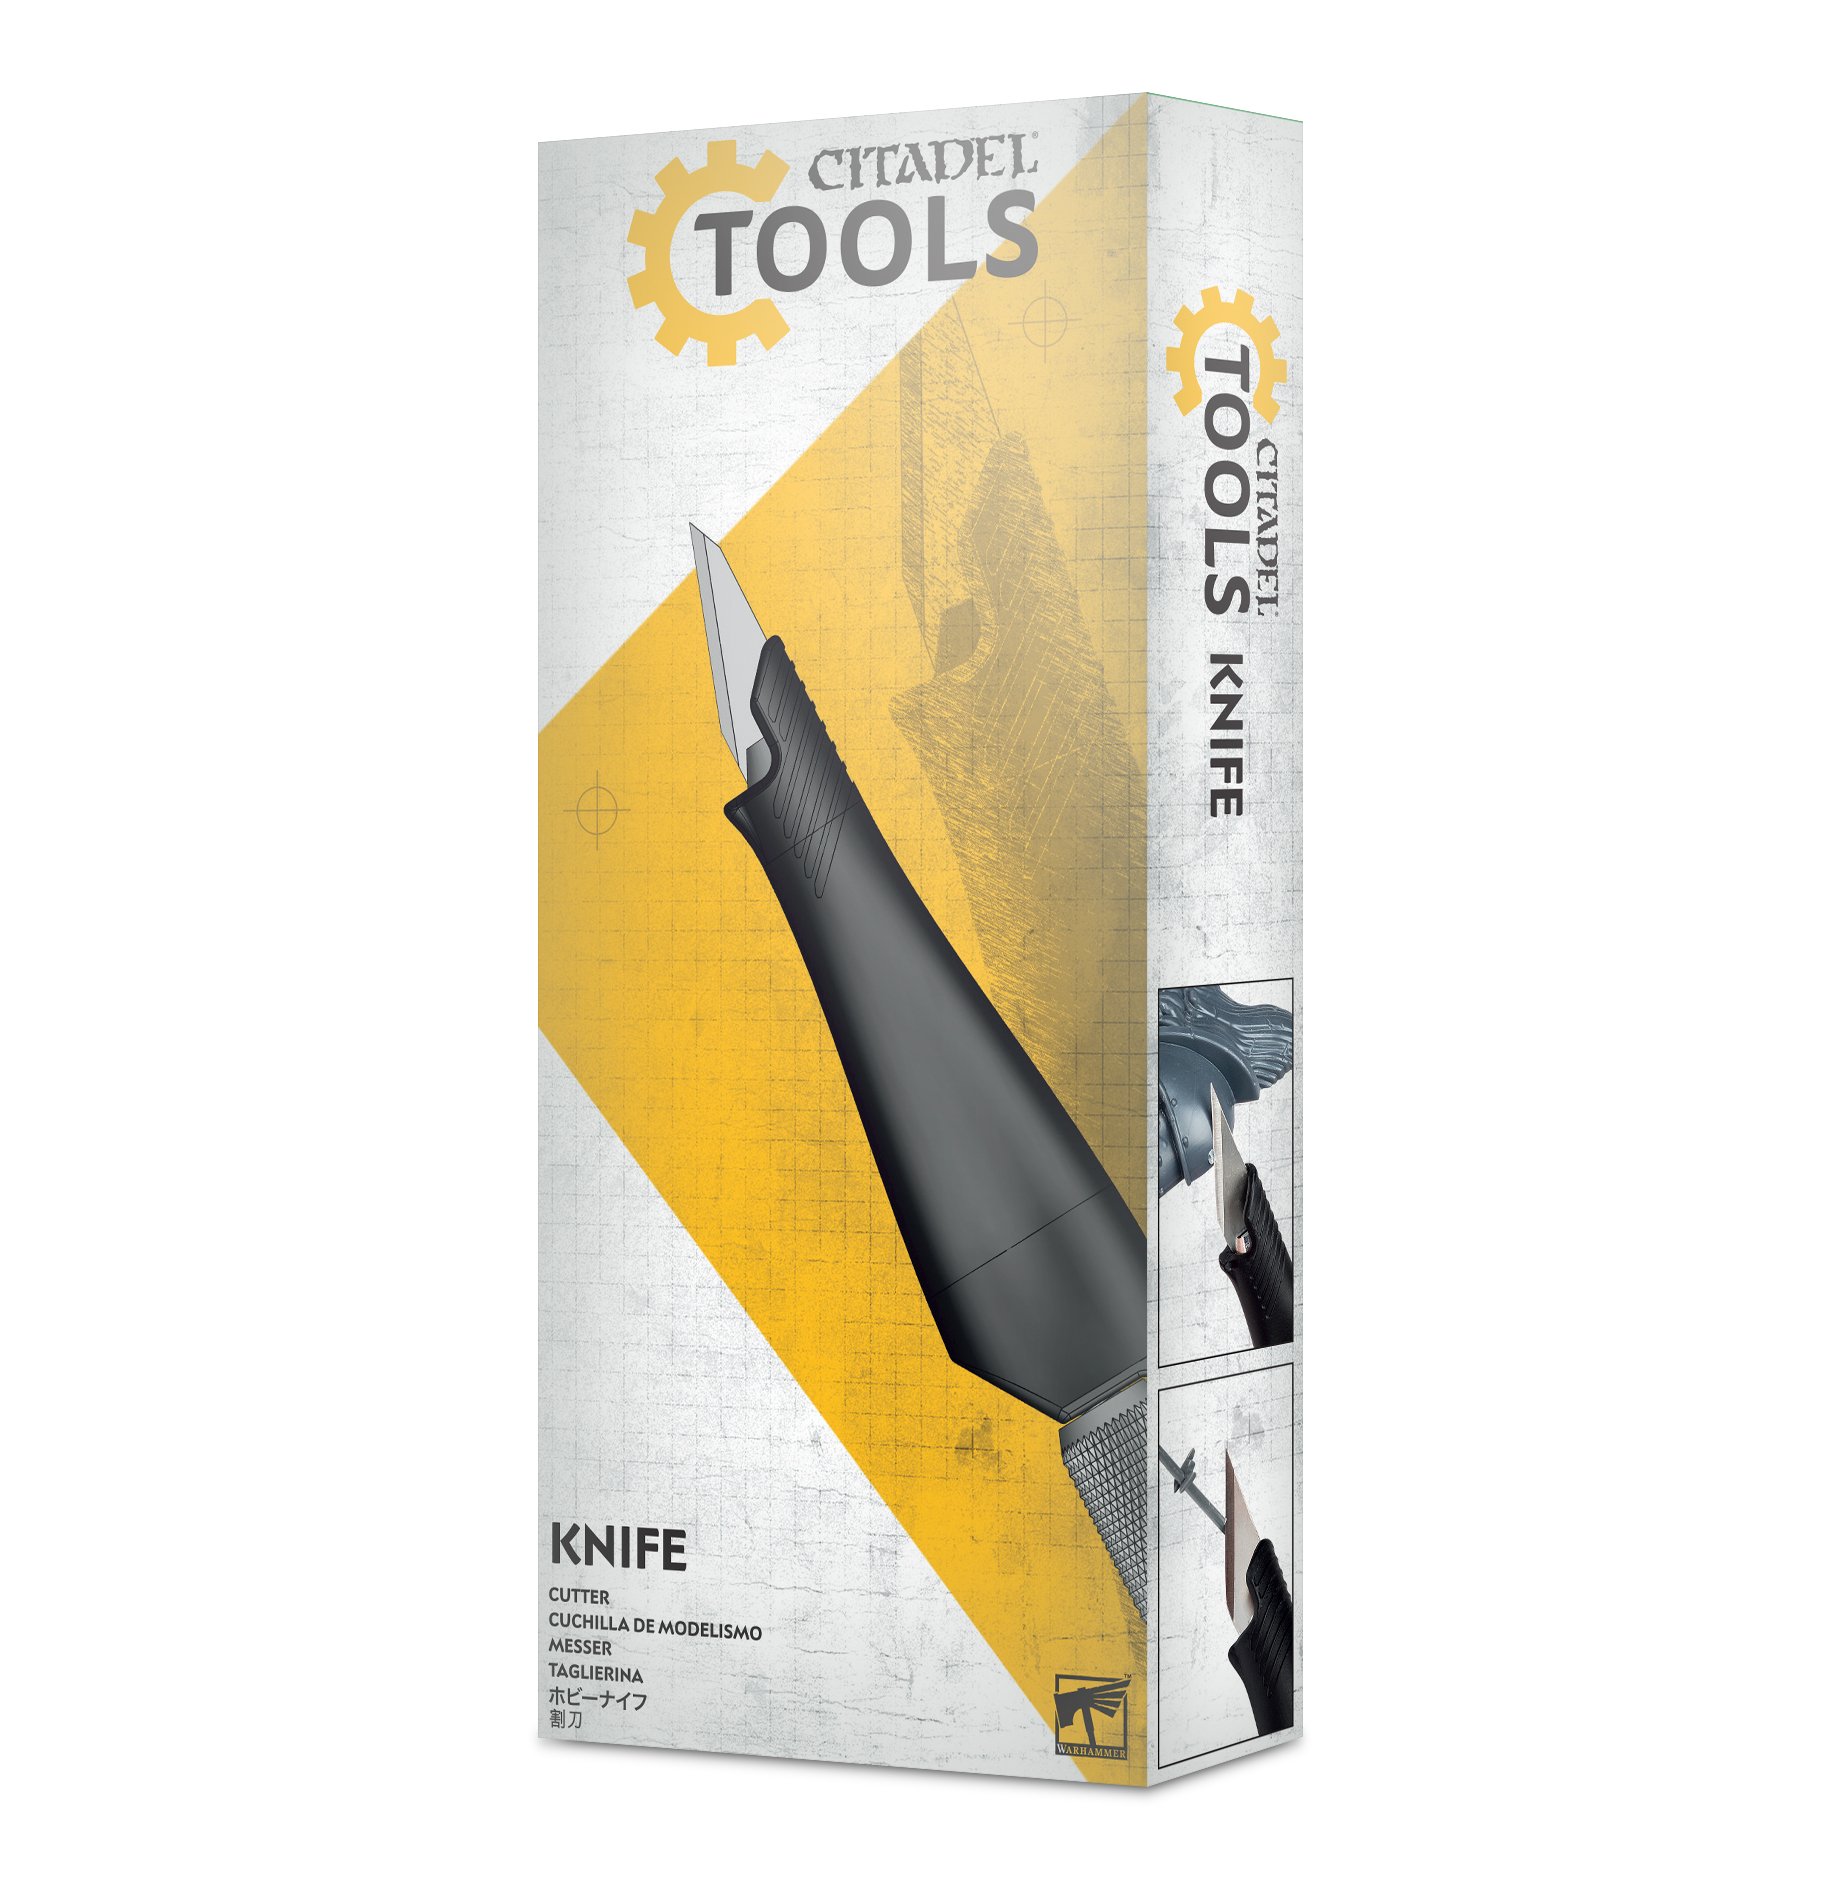 Citadel: Tools: Knife 